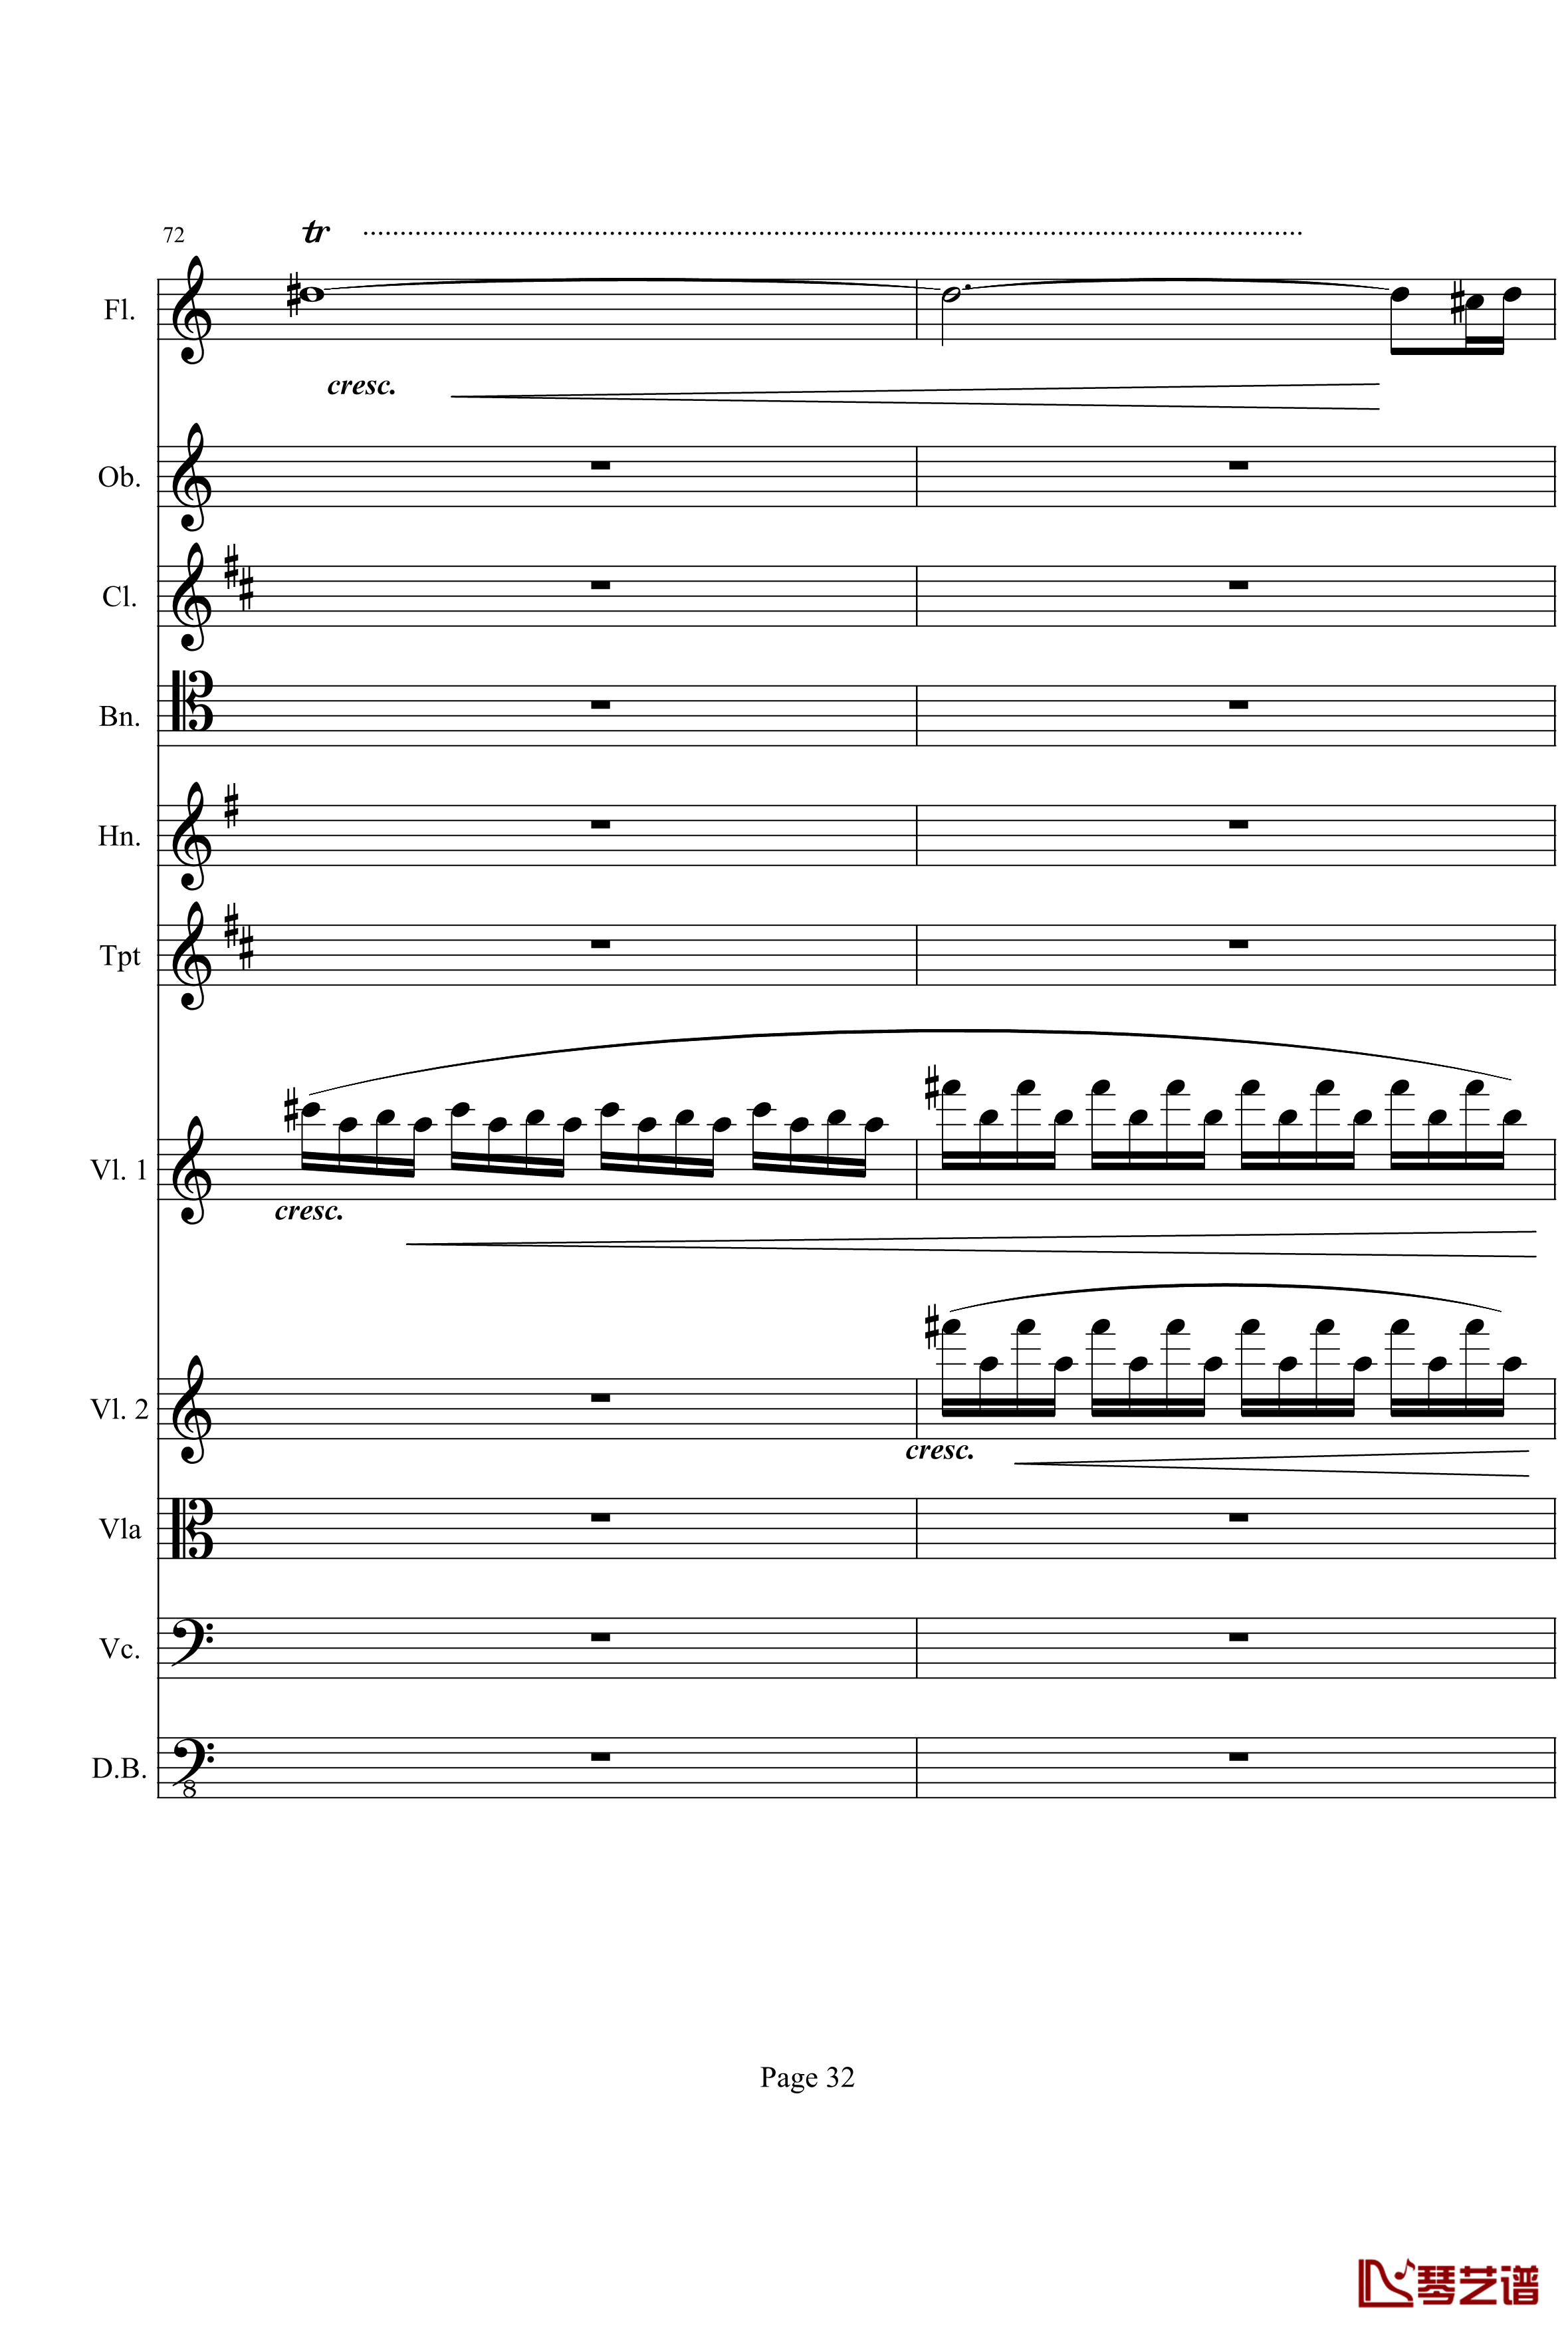 奏鸣曲之交响钢琴谱-第21-Ⅰ-贝多芬-beethoven32